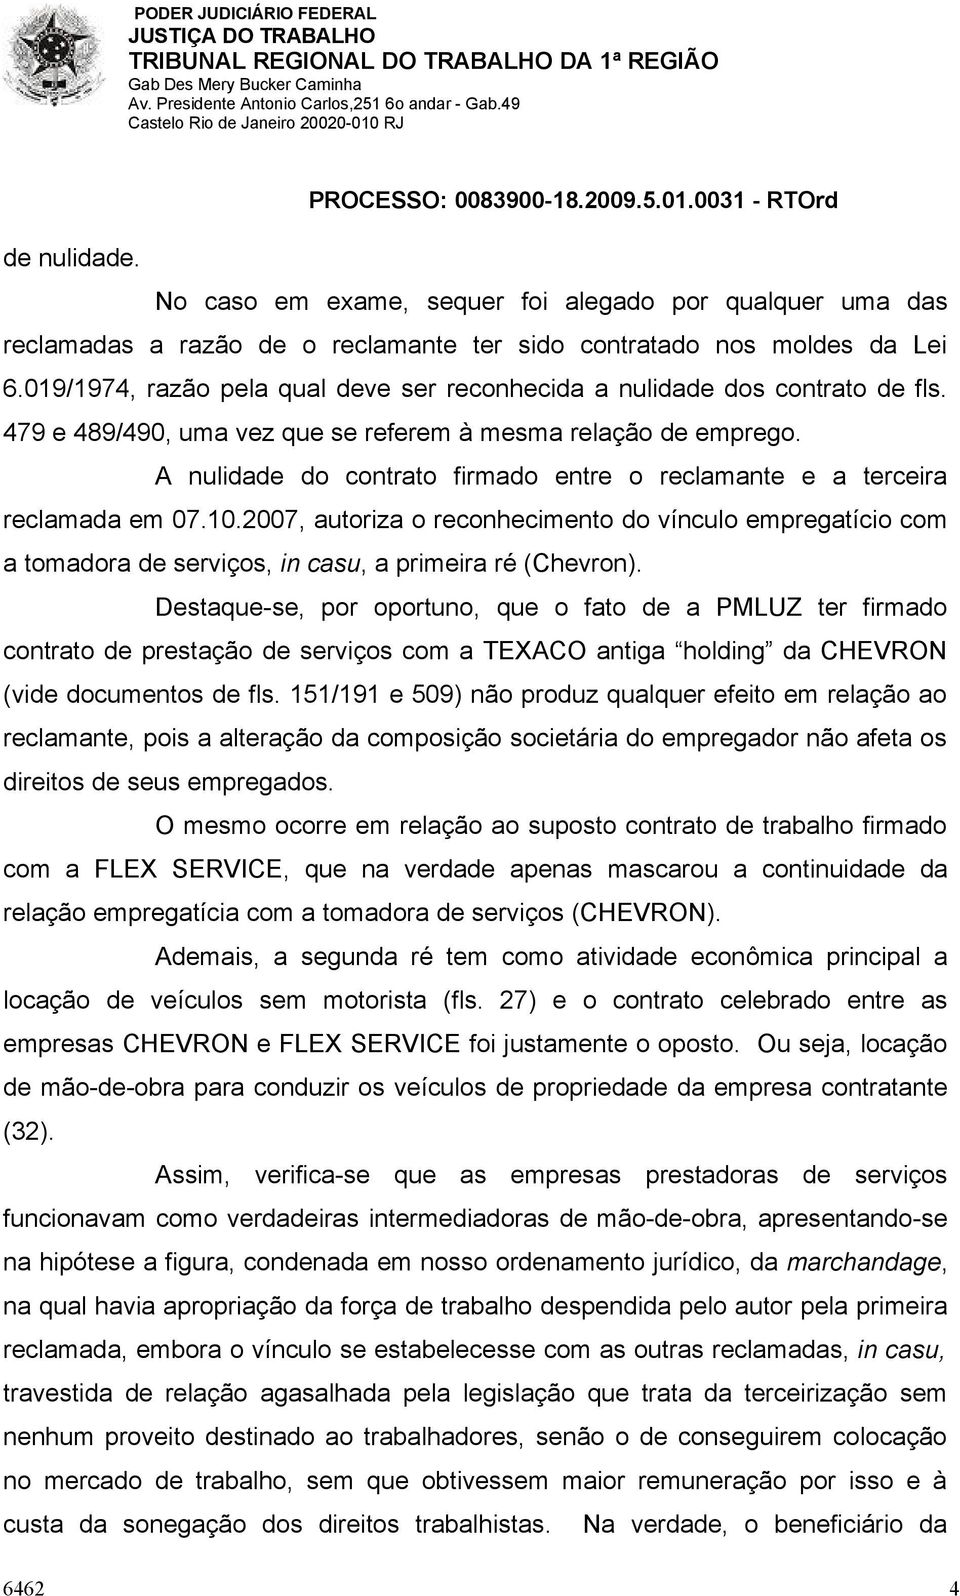 A nulidade do contrato firmado entre o reclamante e a terceira reclamada em 07.10.2007, autoriza o reconhecimento do vínculo empregatício com a tomadora de serviços, in casu, a primeira ré (Chevron).